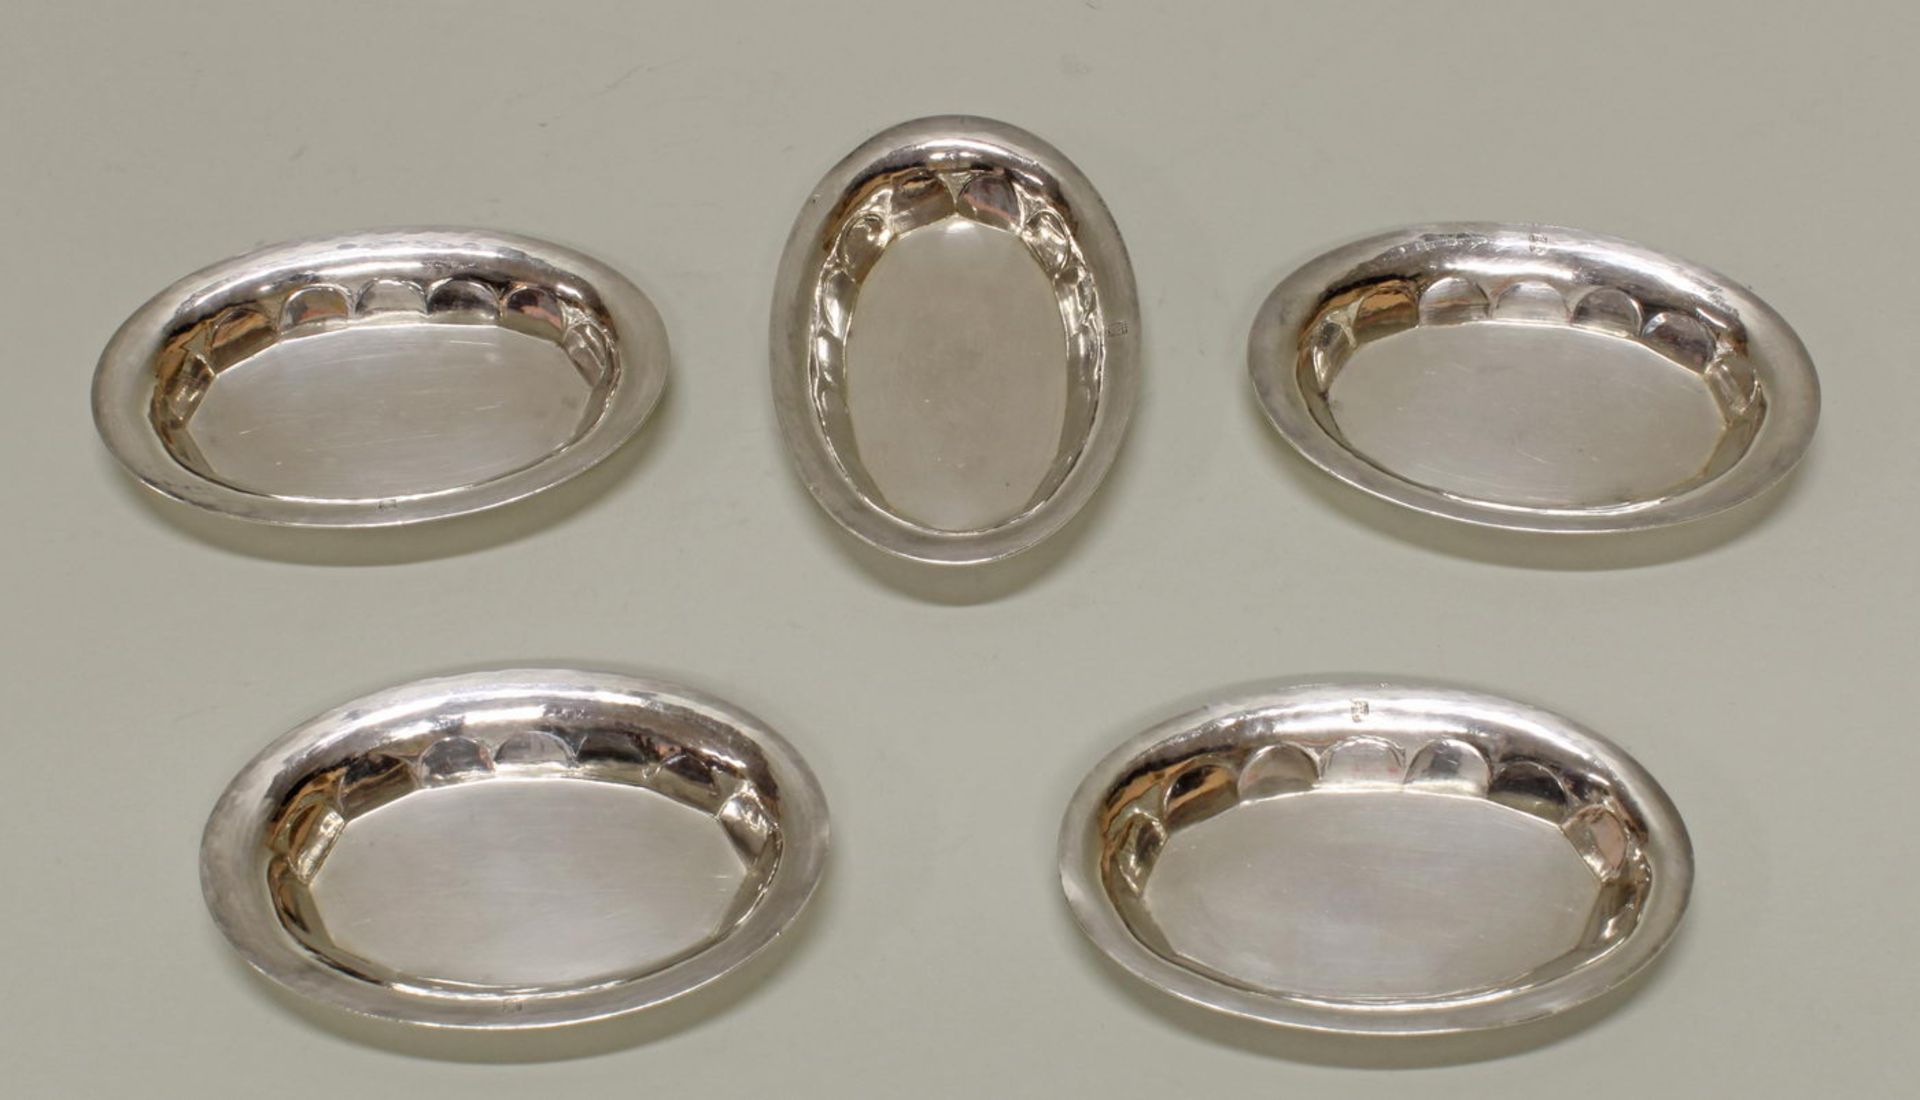 5 Schälchen, Silber 925, Berlin, H.J. Wilm, oval, 1.2 x 9.5 x 6.5 cm, zus. ca. 230 g